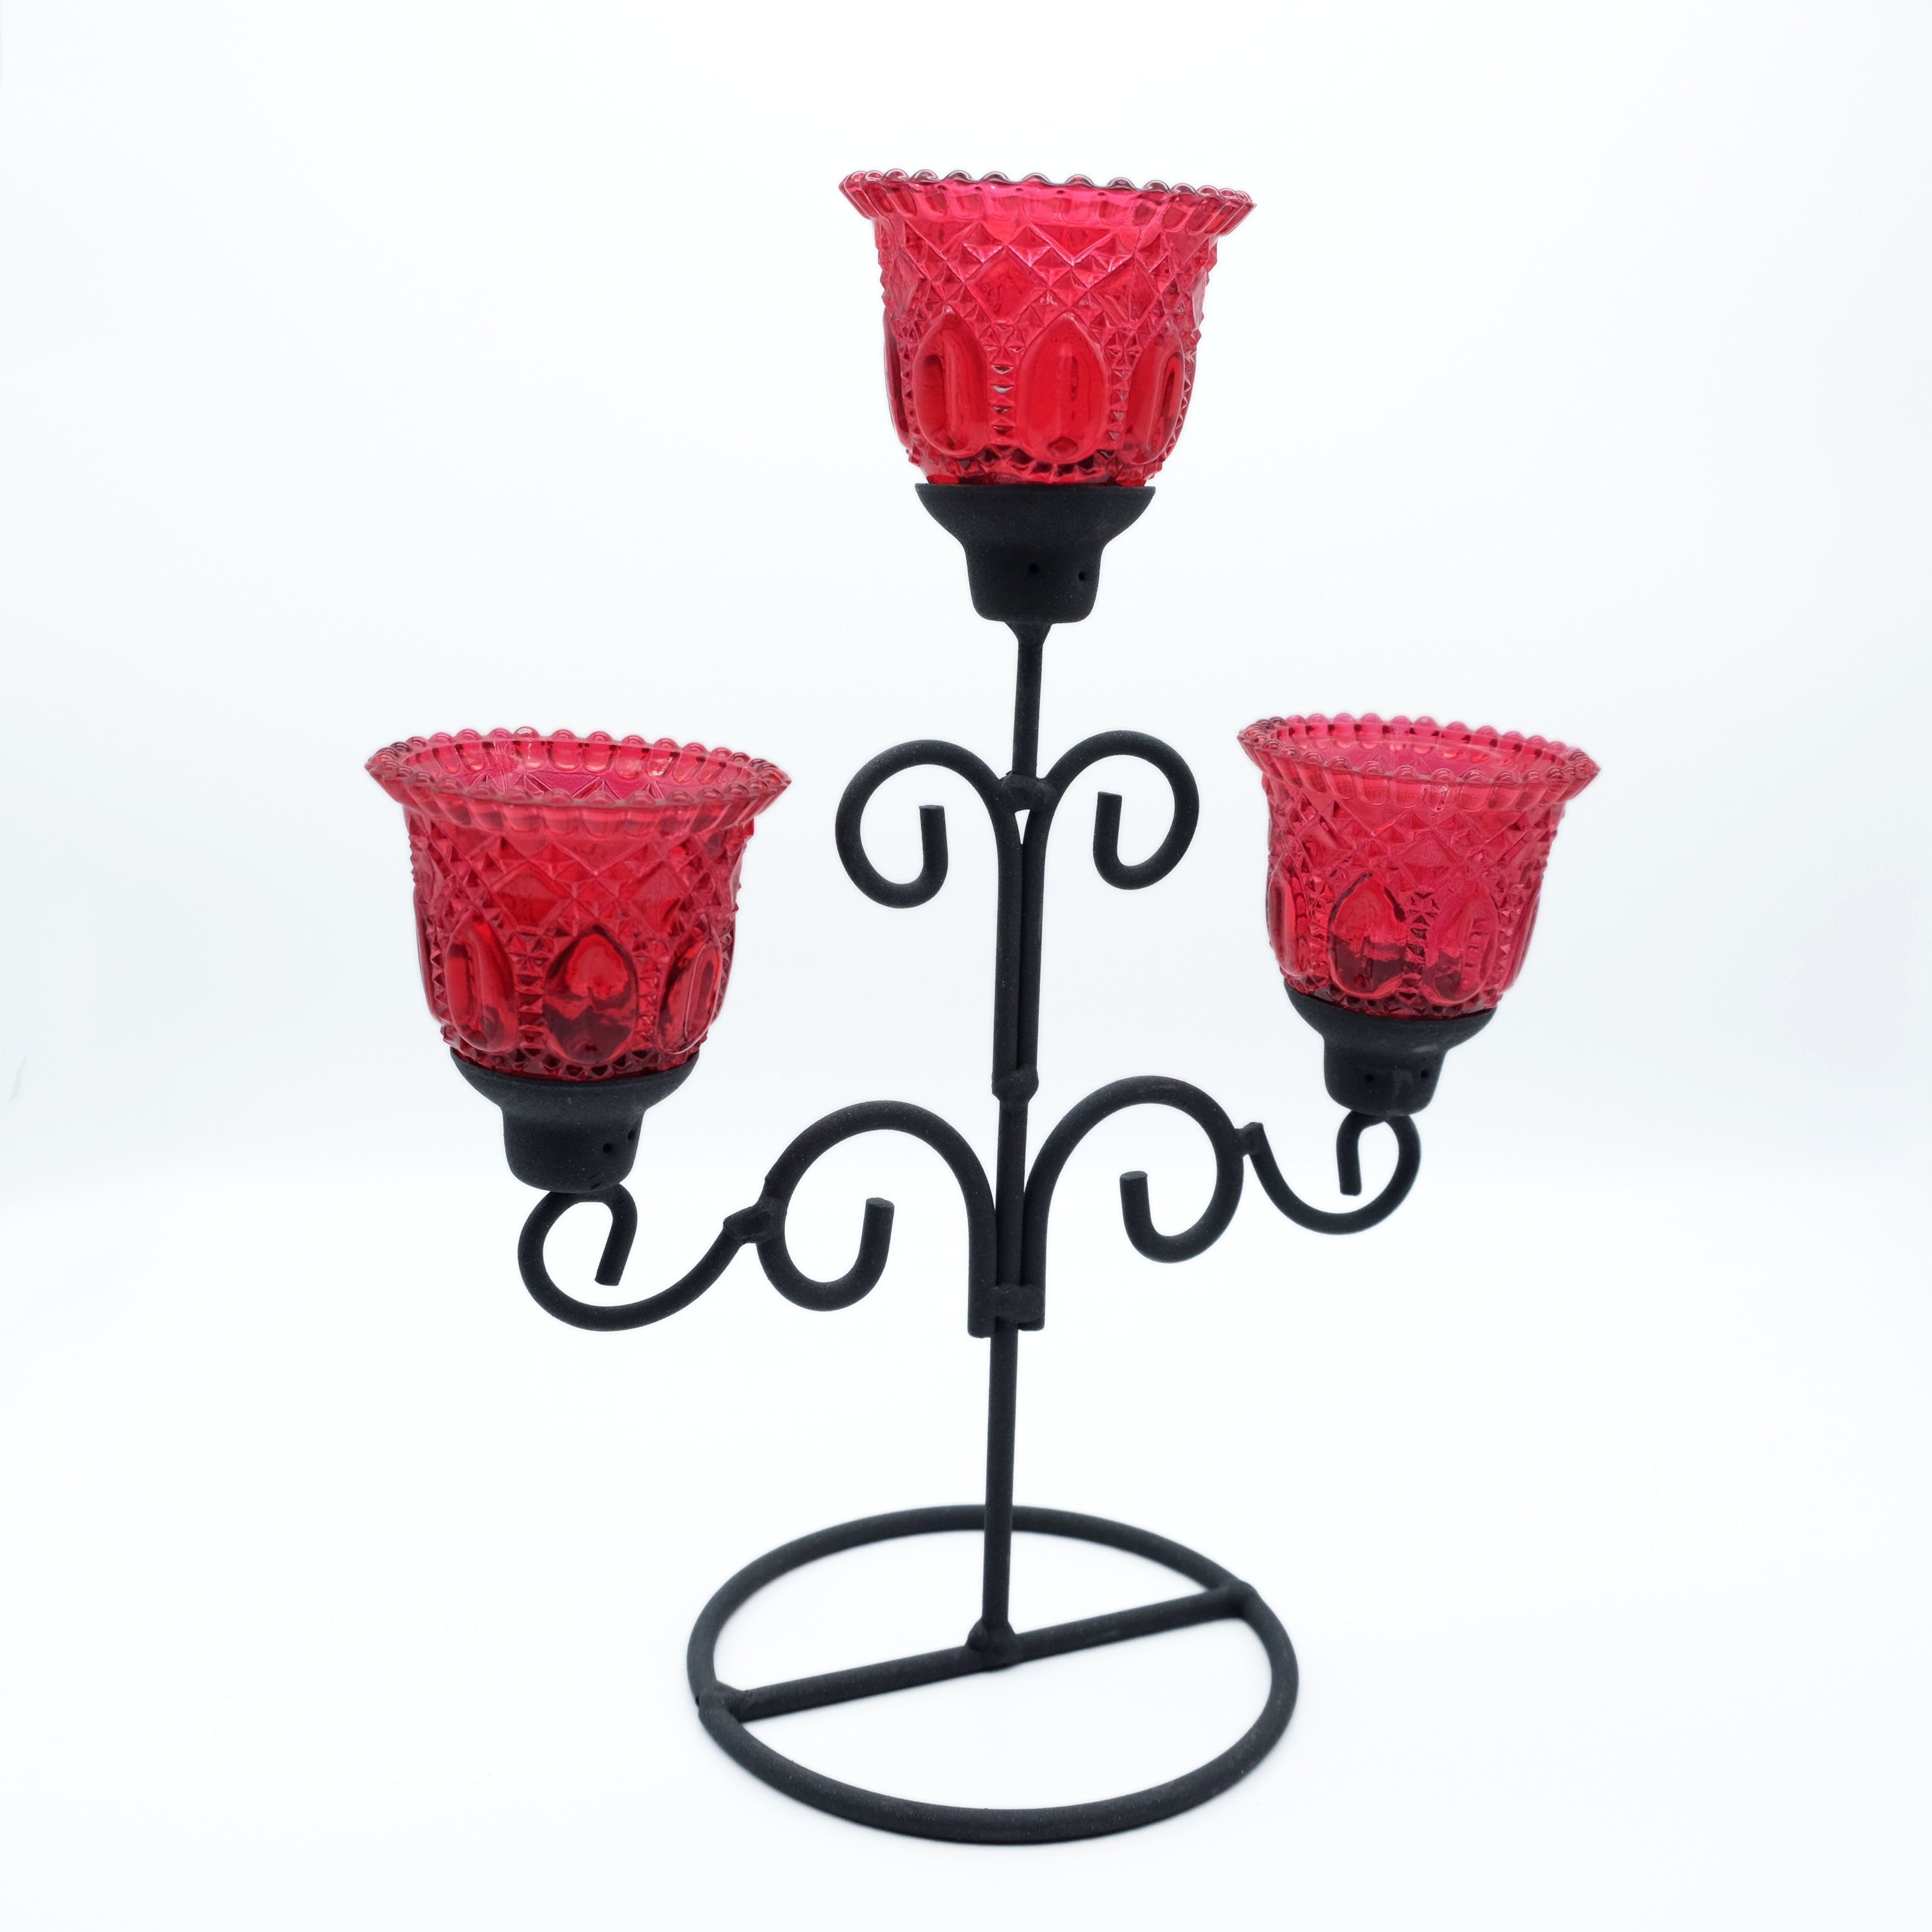 DeColibri Kerzenständer Kerzenständer, Kerzenhalter, Teelichthalter Glas, standfest, für Kerzen und Teelichte geeignet rot